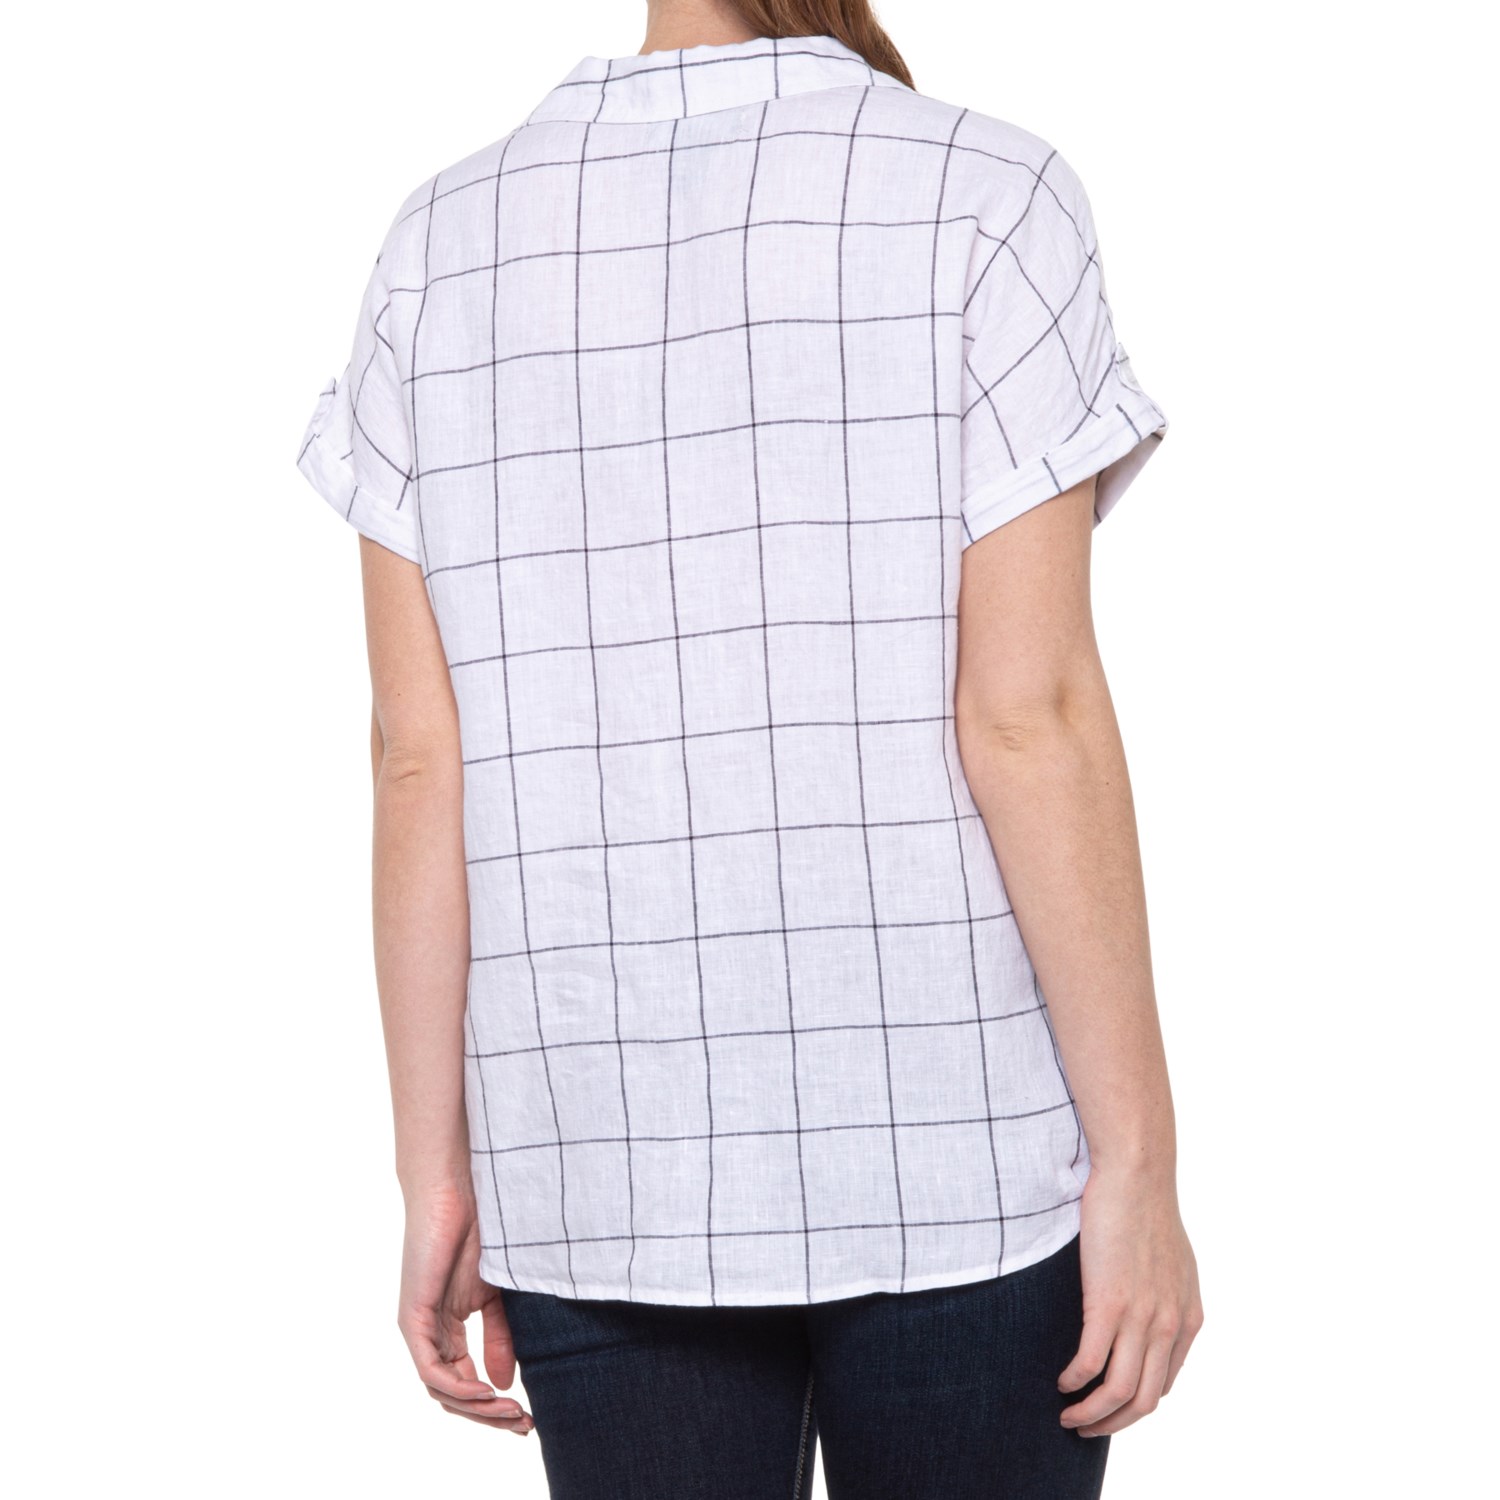 Tahari 100% Linen Windowpane Plaid Shirt (For Women) - Save 22%